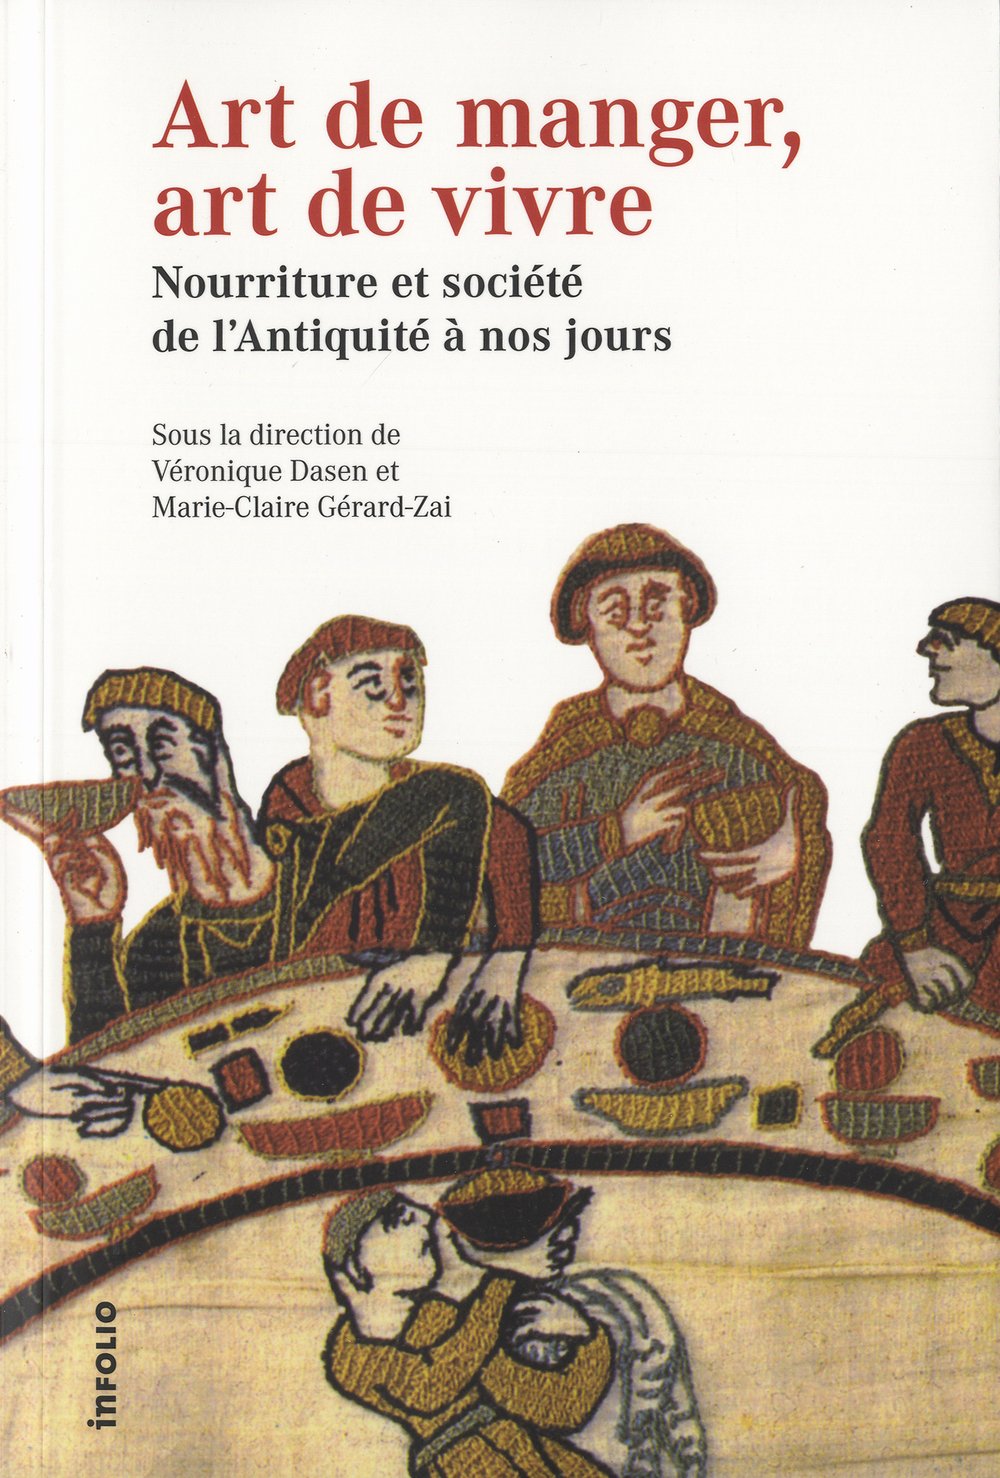 Art de manger, art de vivre. Nourriture et société de l'Antiquité à nos jours, 2012, 336 p.